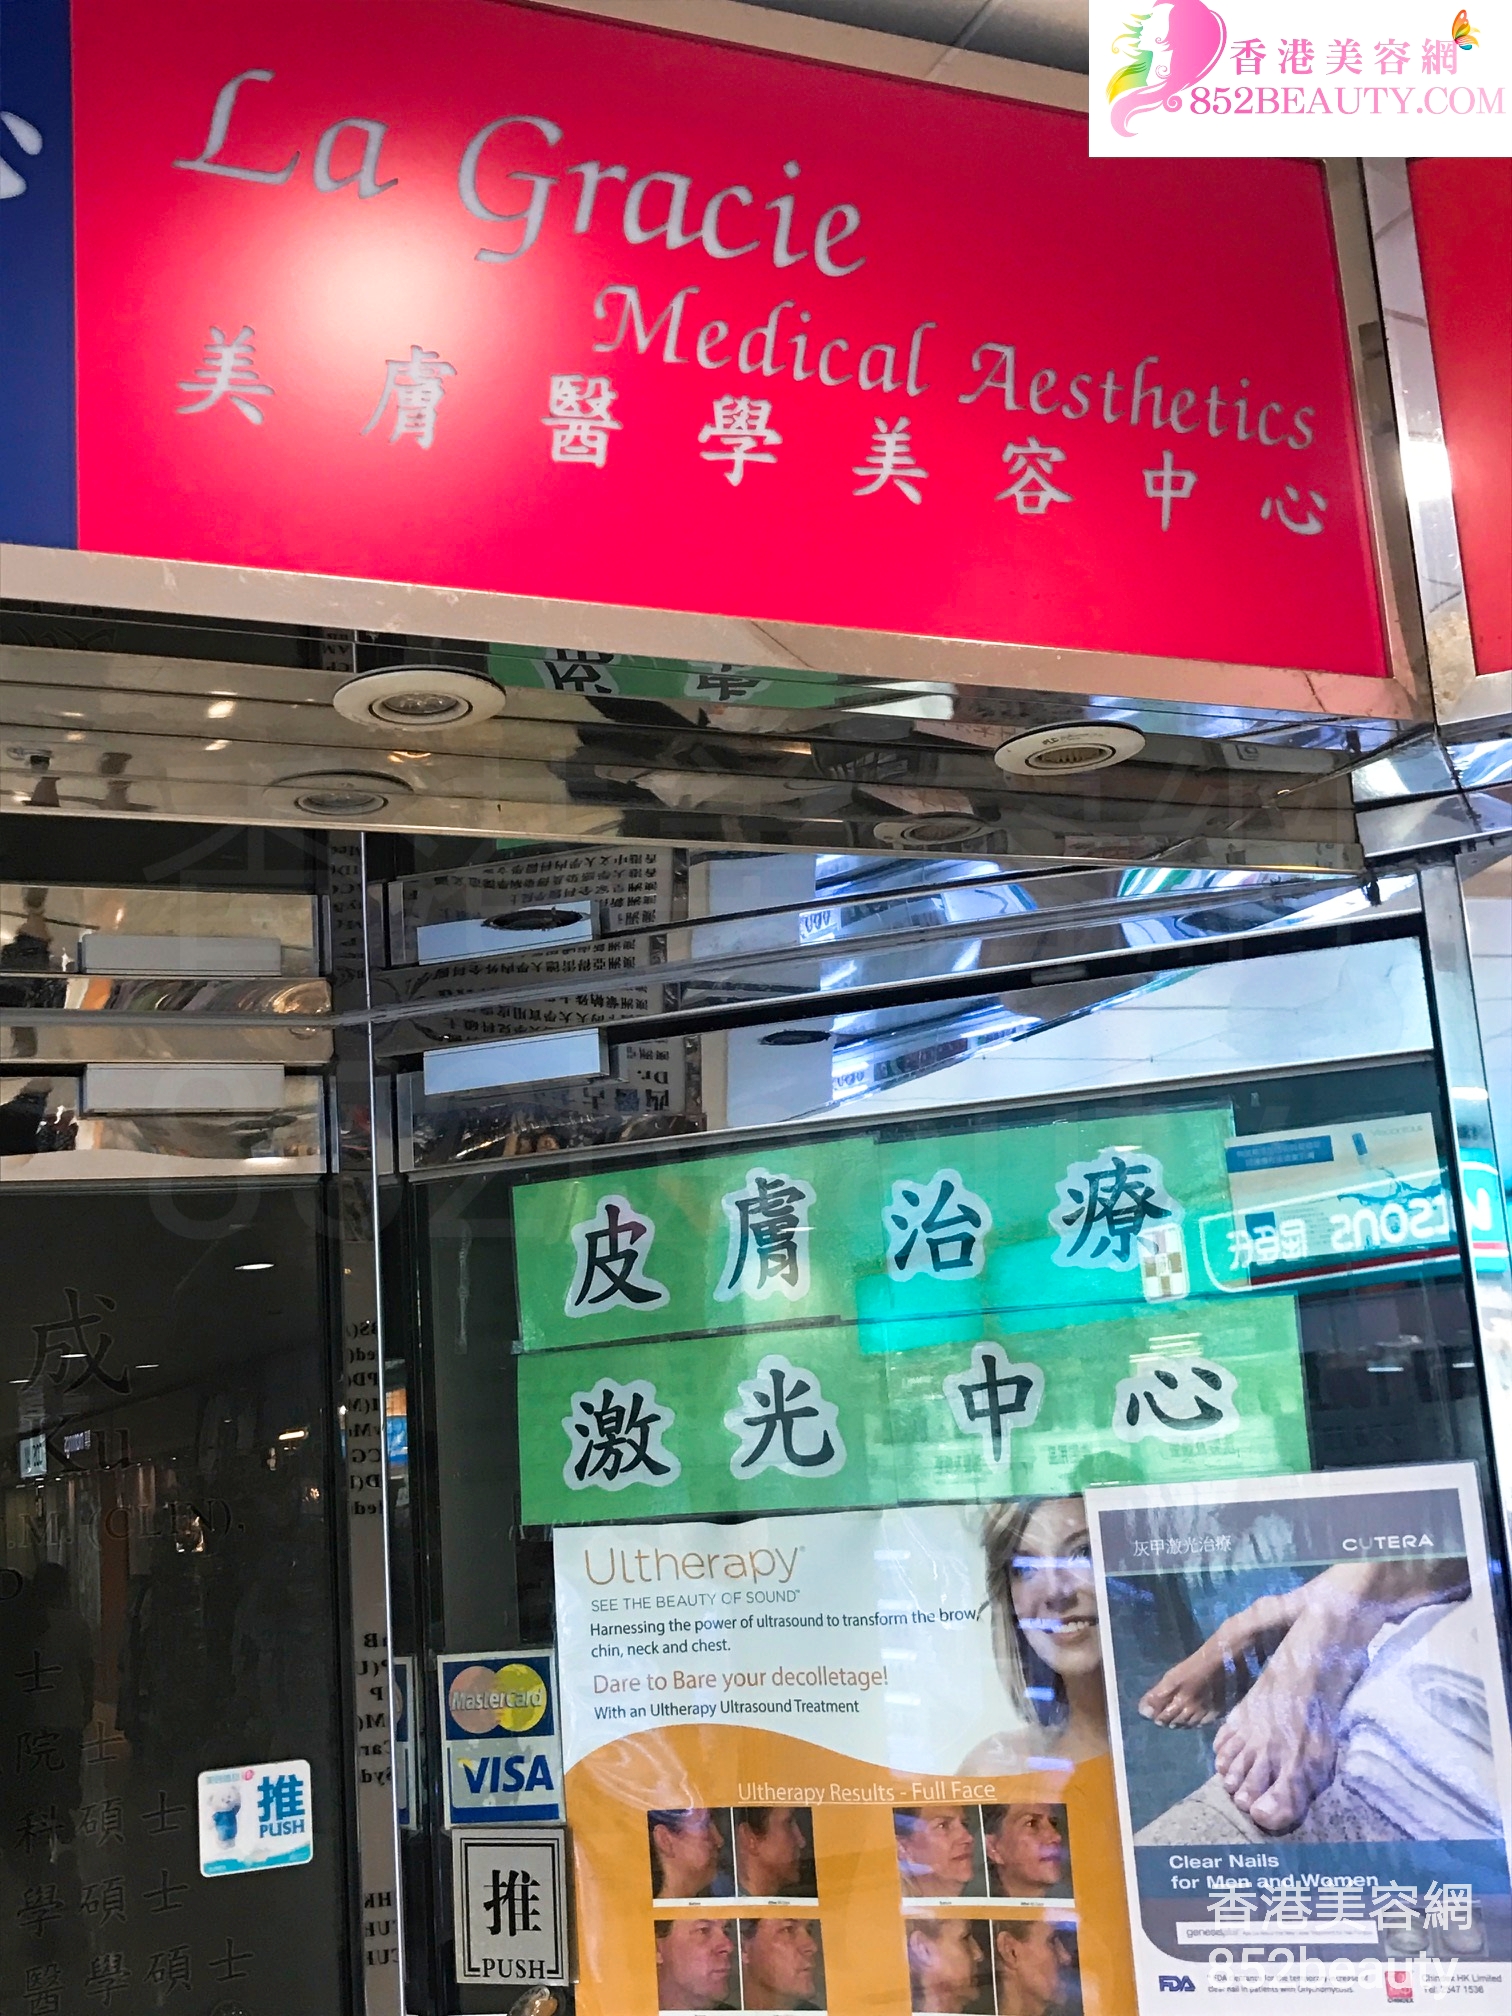 香港美容網 Hong Kong Beauty Salon 美容院 / 美容師: La Gracie Medical Aesthetics 美膚醫學美容中心